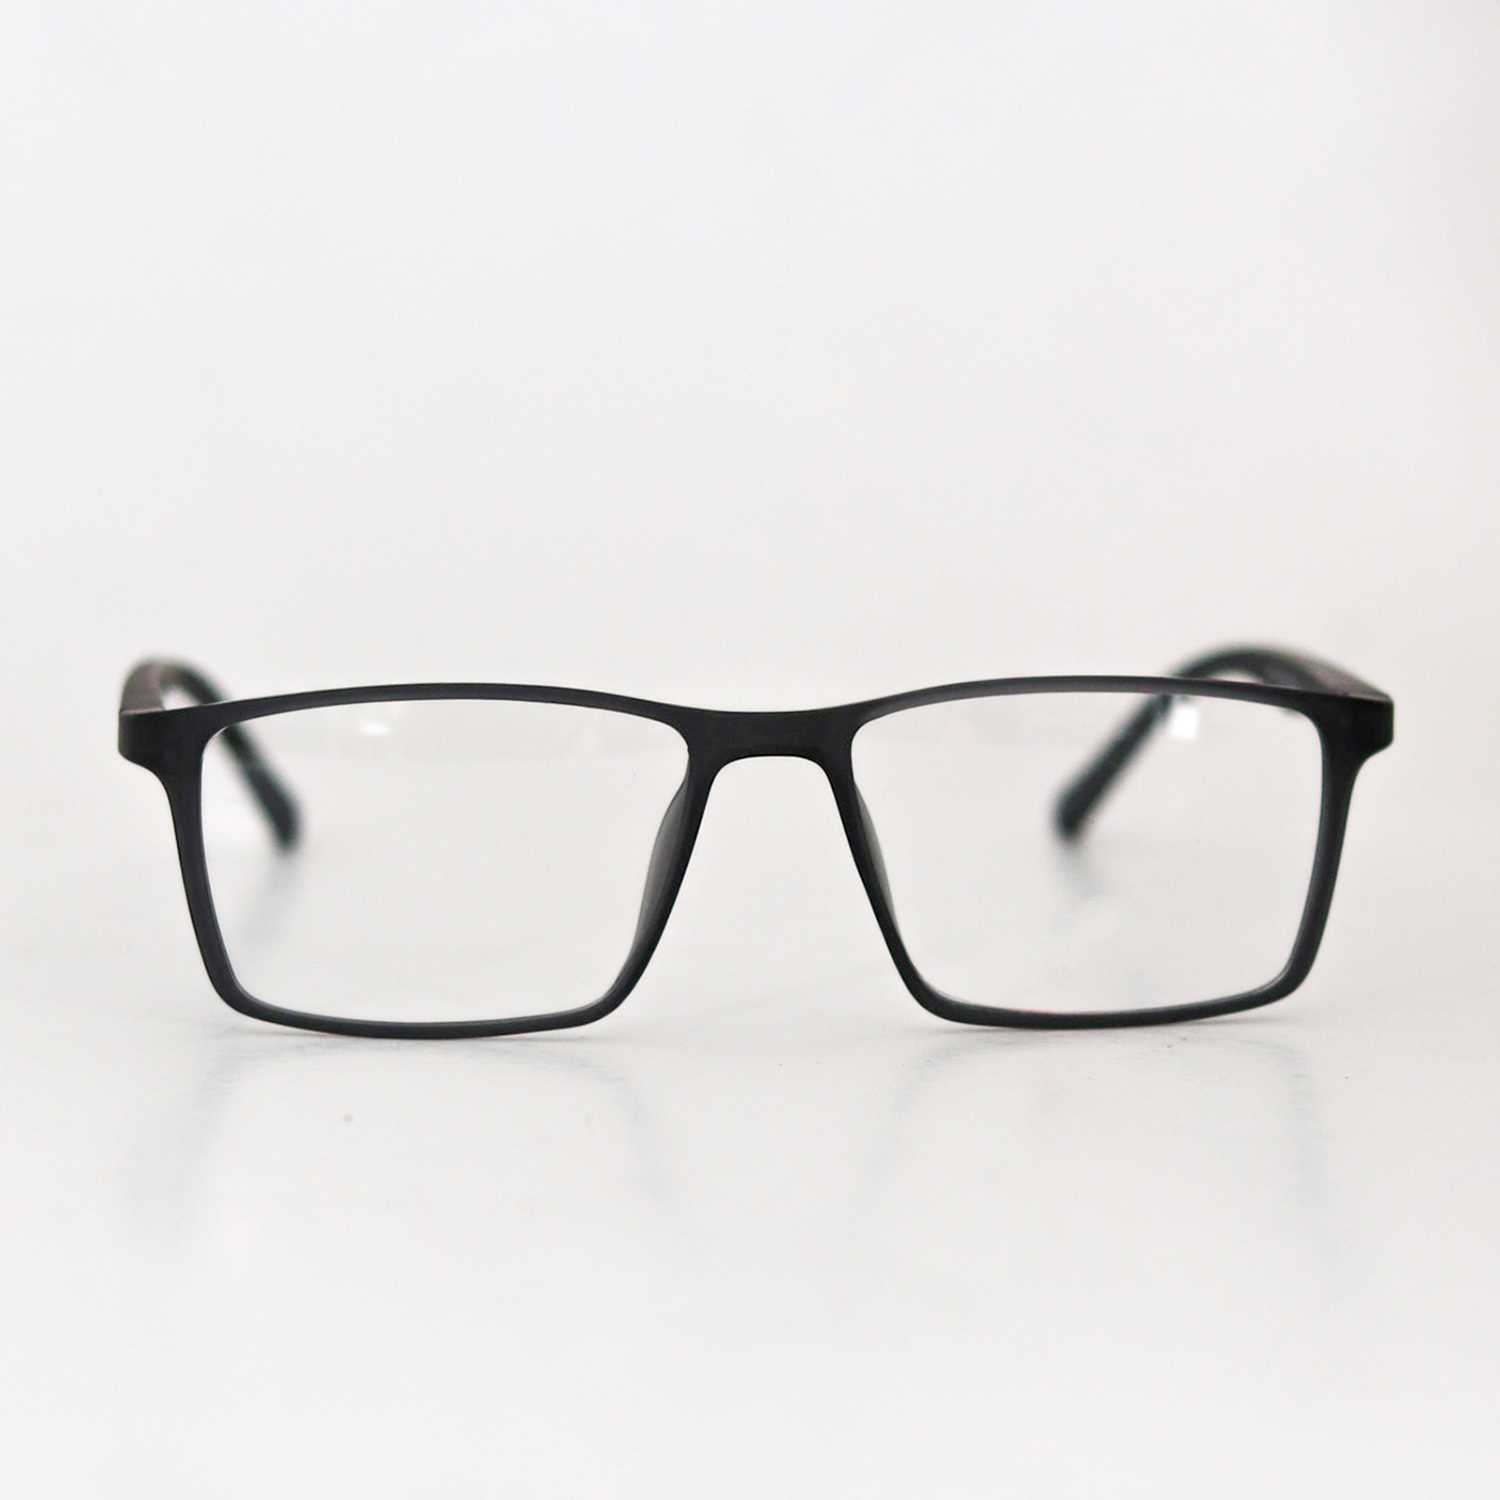 Full ABS Frame Men's Optical Glass